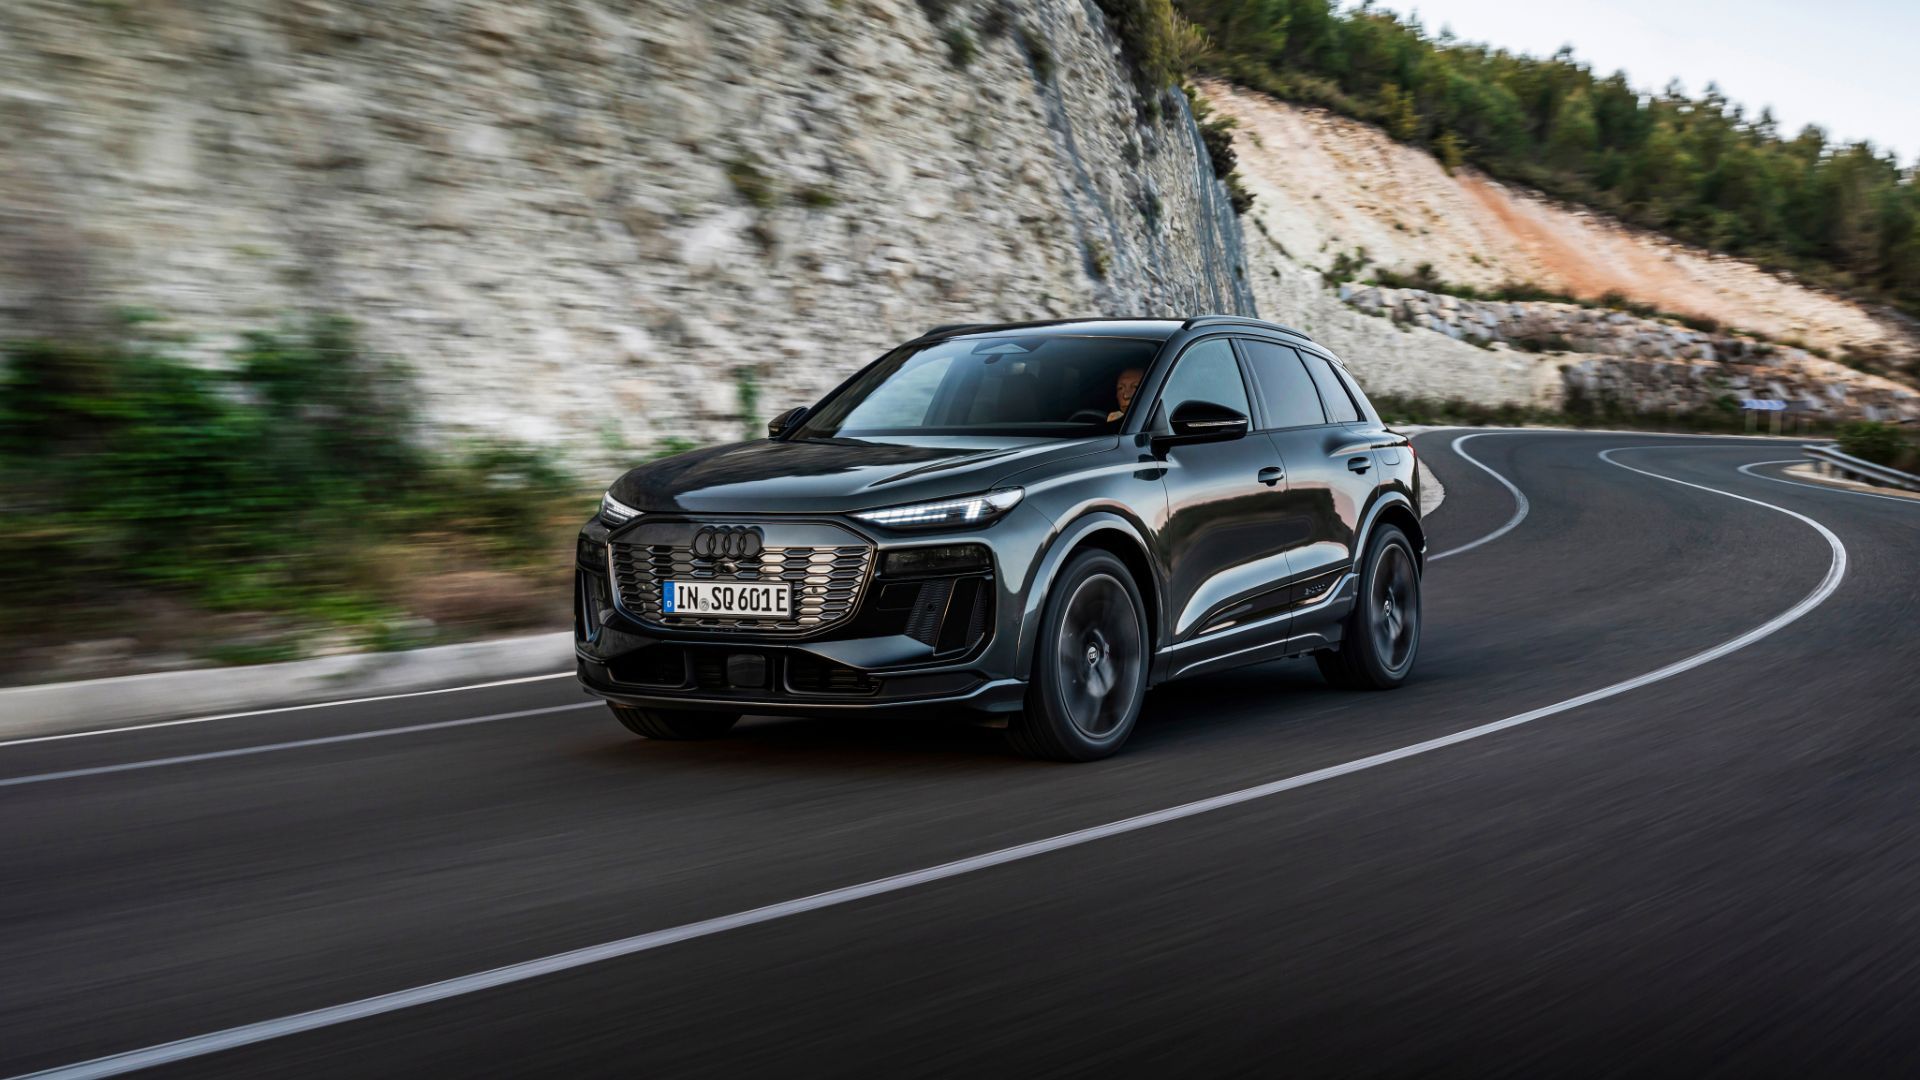 Spannung erhöht: Der Audi Q6 e-tron und der Audi SQ6 e-tron (Bild) stehen für den Wandel der Vier Ringe zu einem führenden Anbieter im Bereich der Elektromobilität. Mit neuer Plattform, Elektronikarchitektur, Lade- wie Batterietechnologie und ein für Audi wegweisendes Design, bahnt der Q6 e-tron den Weg in die vollelektrische Zukunft von Audi.